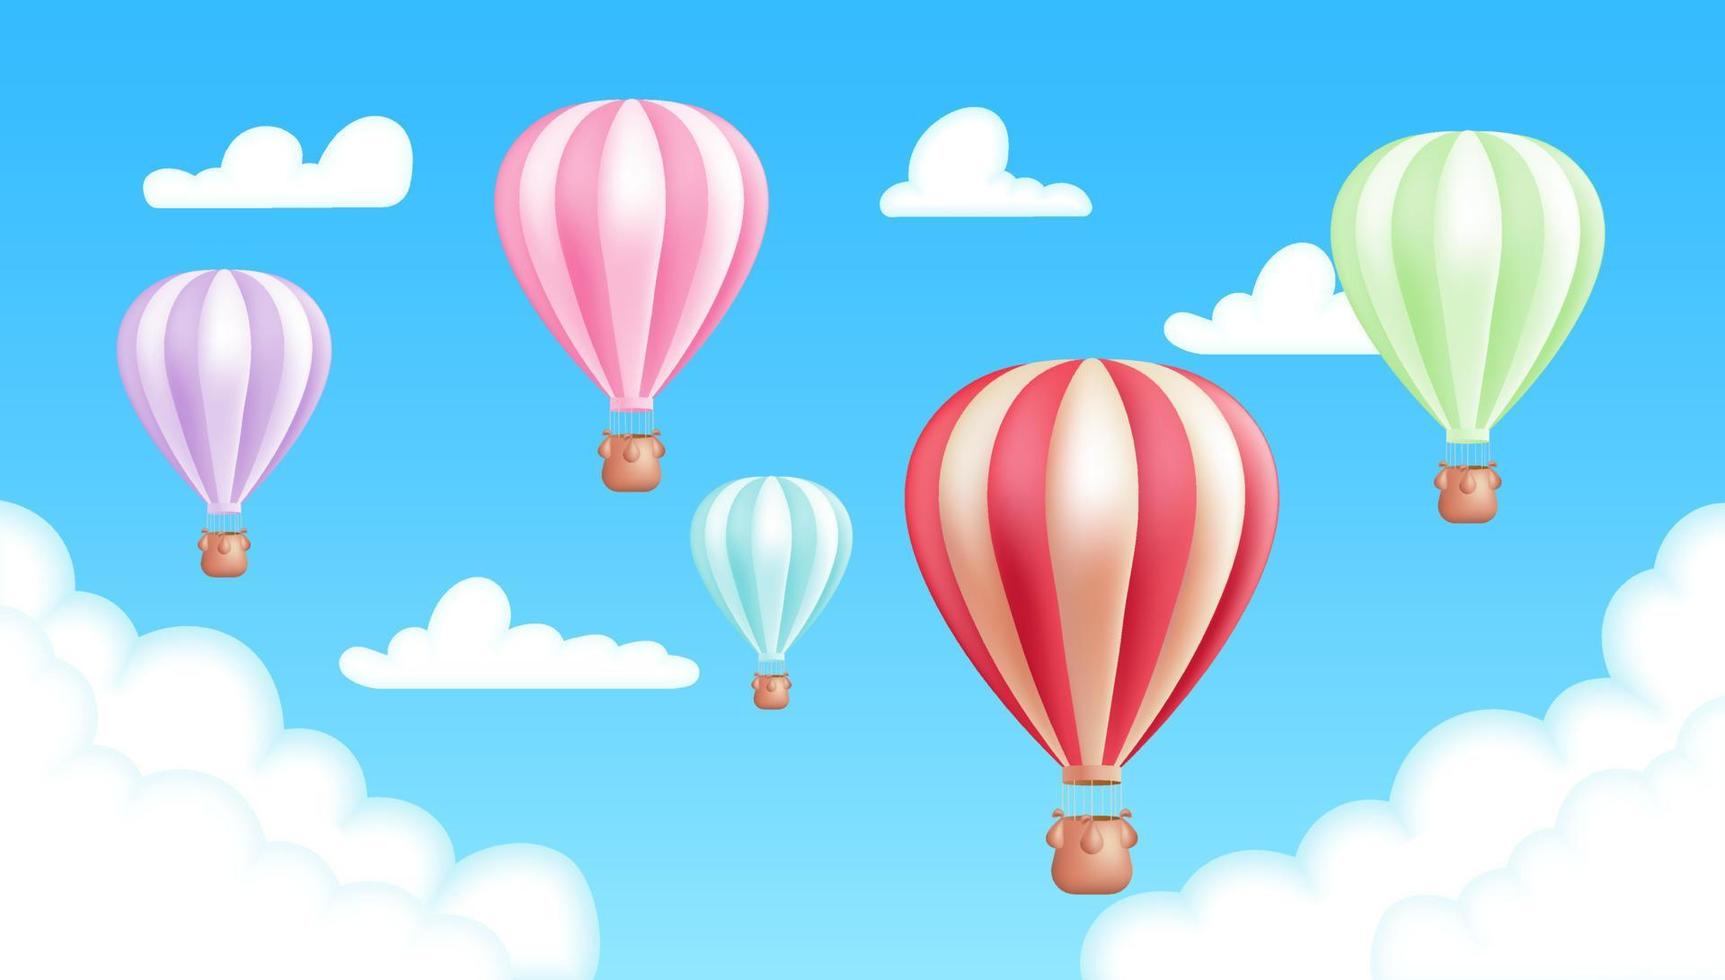 realistisk 3d vektor illustration av en färgrik varm luft ballonger i en blå himmel bakgrund med moln. äventyr, rekreation, och resa, med ett luftskepp flygande. söt barn tecknad serie bild.